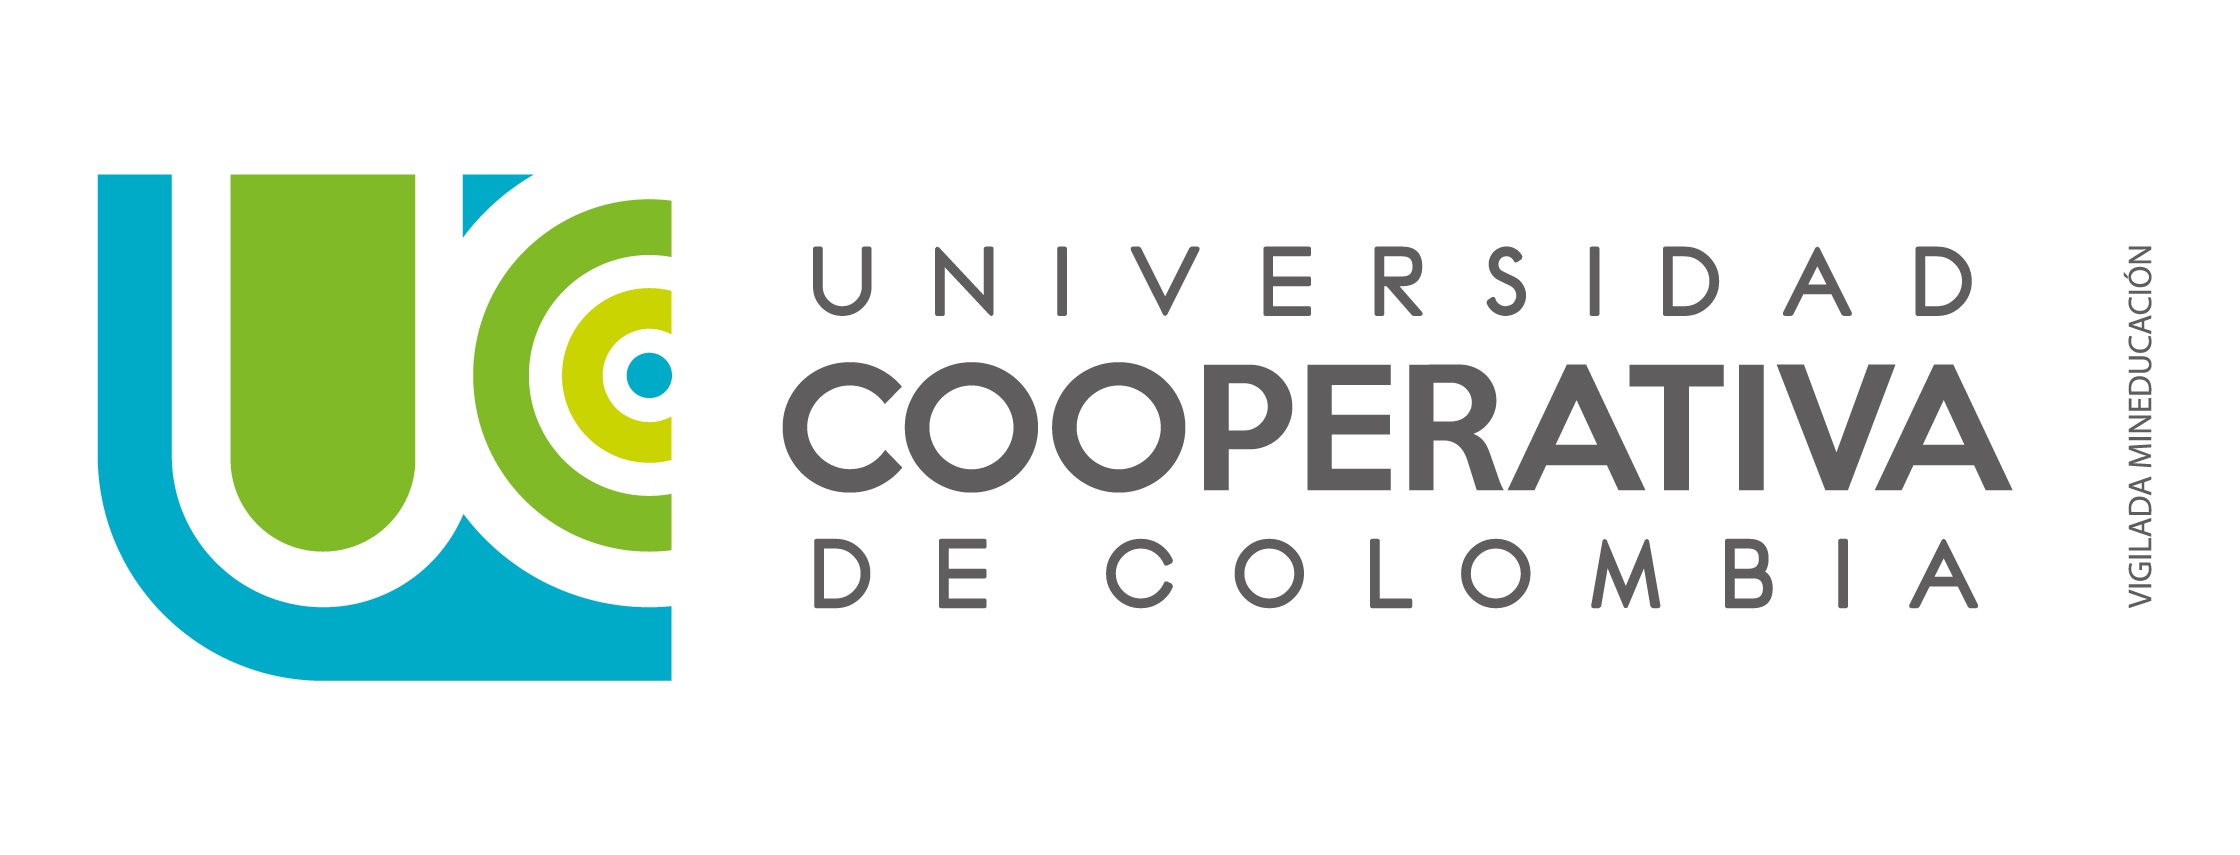 Logo Universidad Cooperativa de Colombia